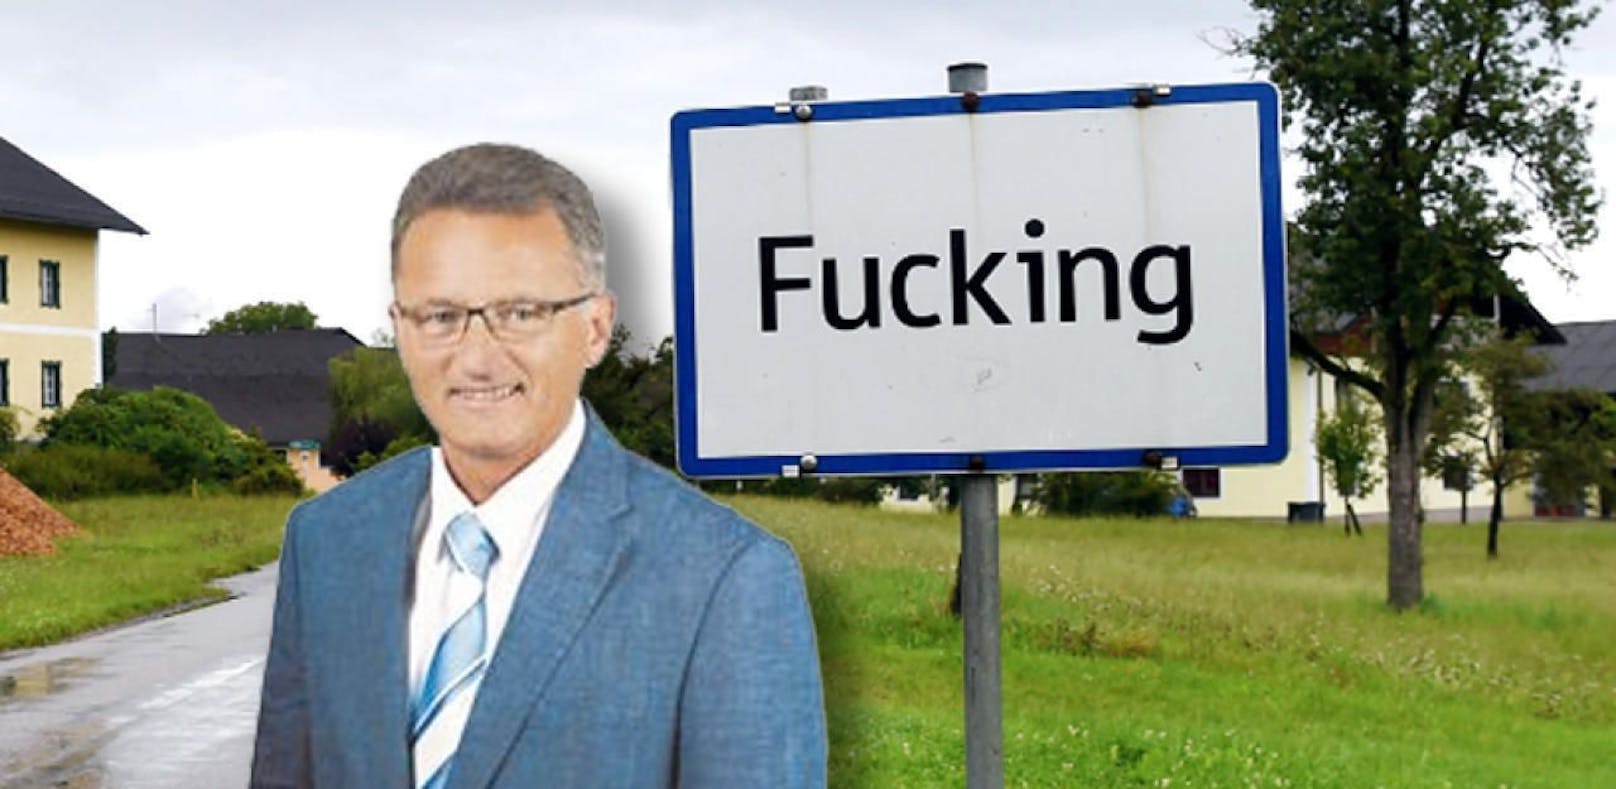 Ein FPÖ-Politiker verkauft Fucking-Ortstaferl